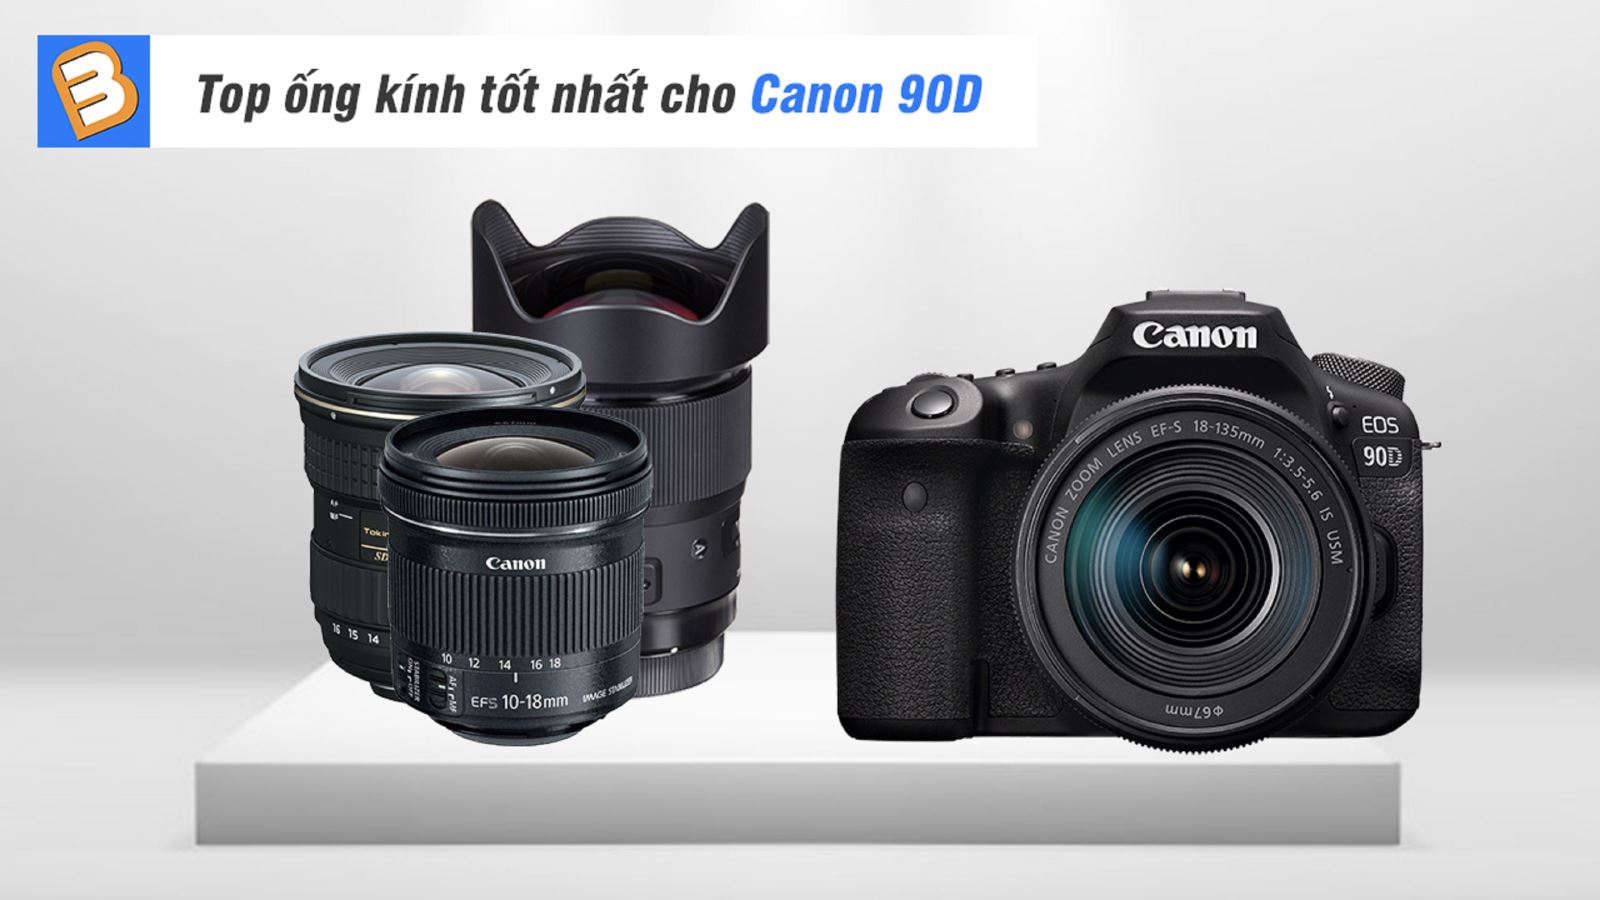 Top ống kính tốt nhất cho Canon 90D